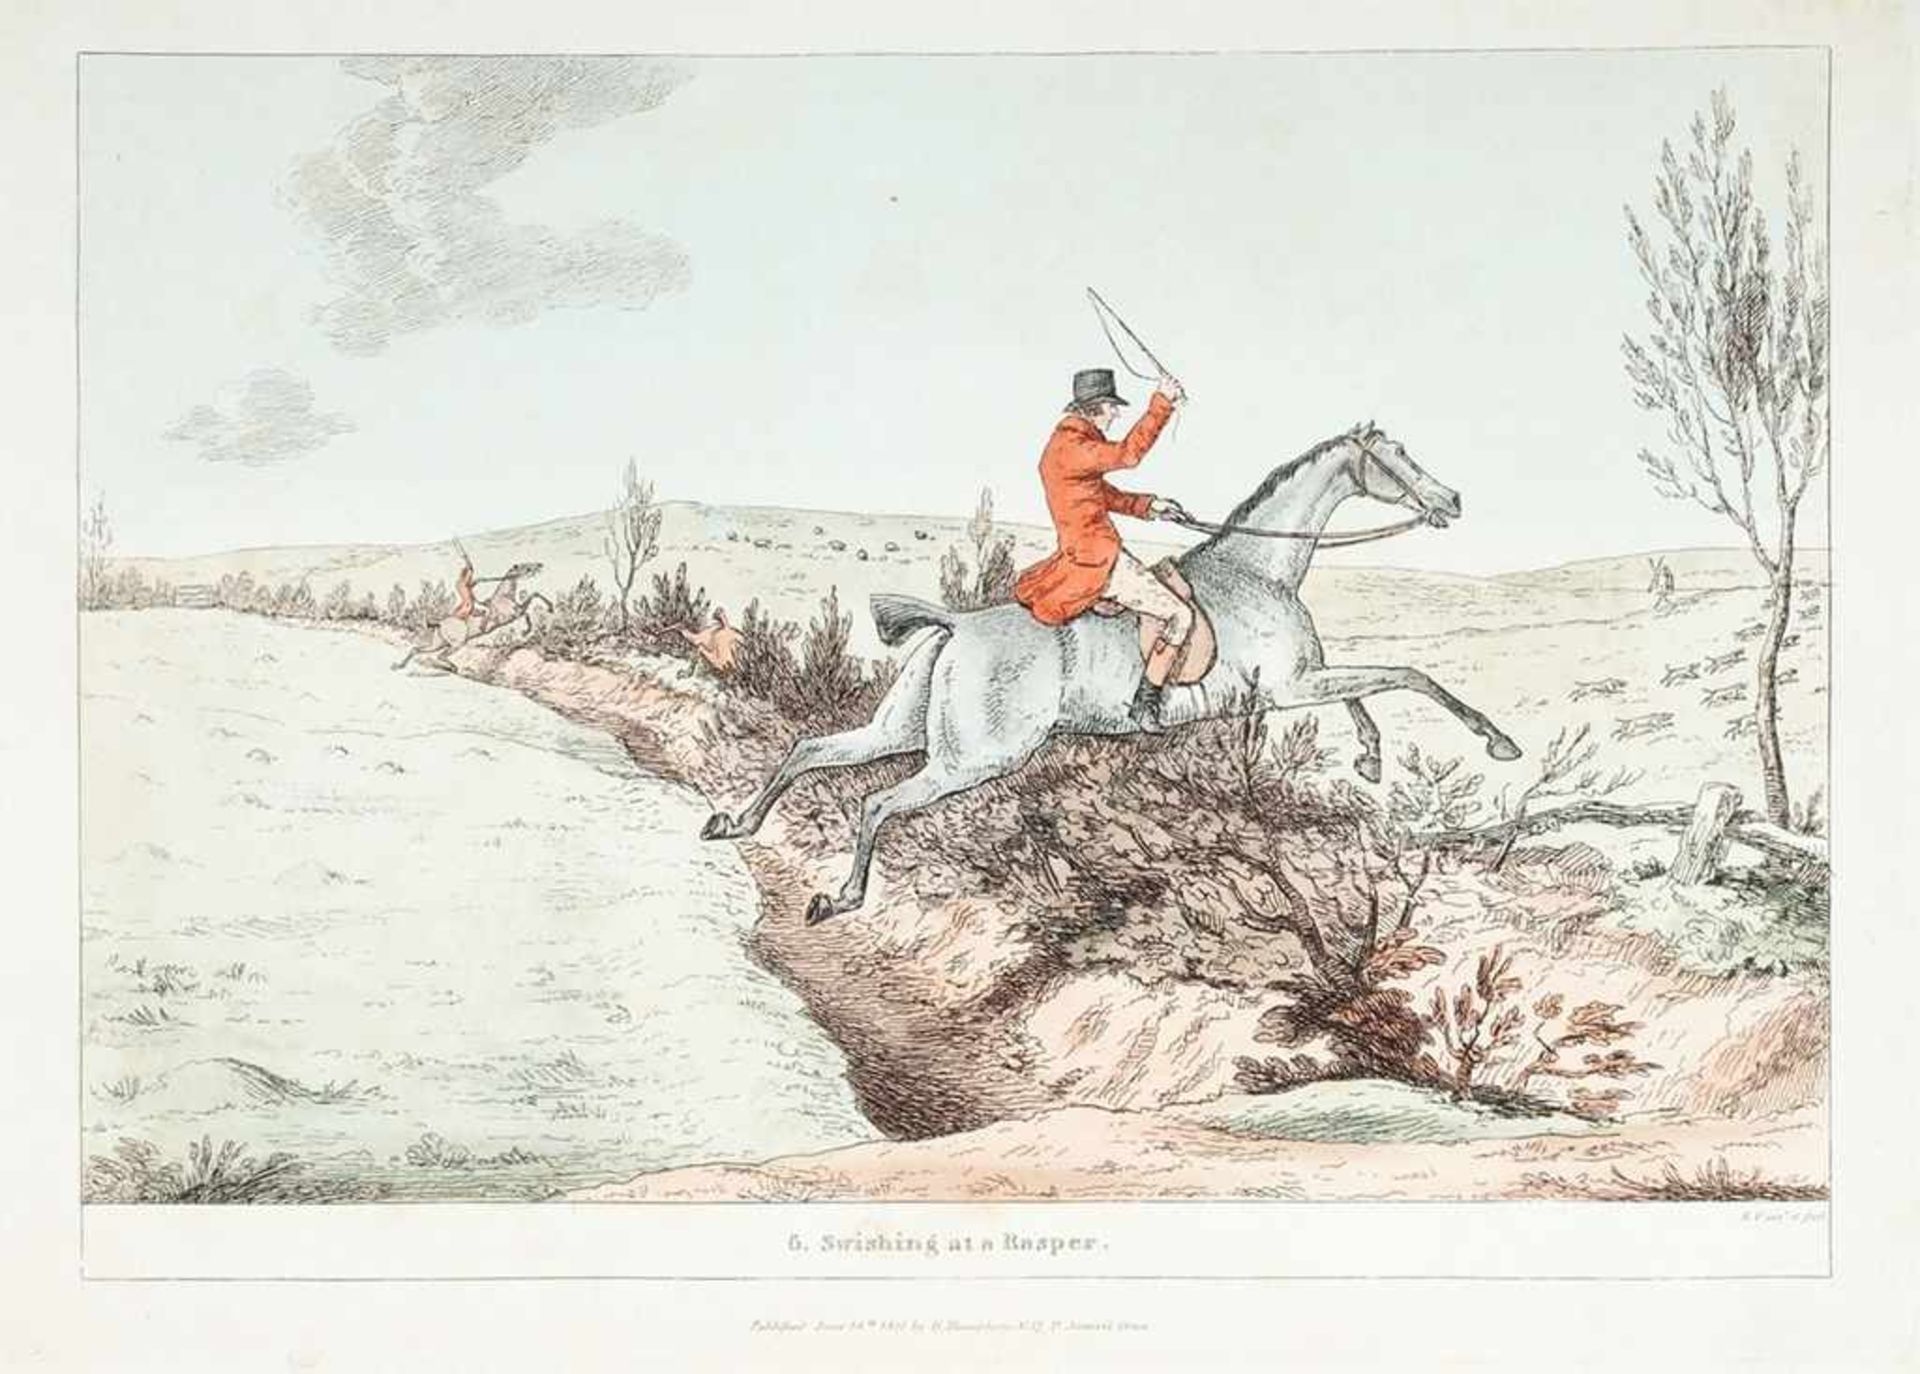 Frankland, Robert (Englischer Künstler, 1784-1849) Radierung, koloriert. "Swishing at a Rasper",